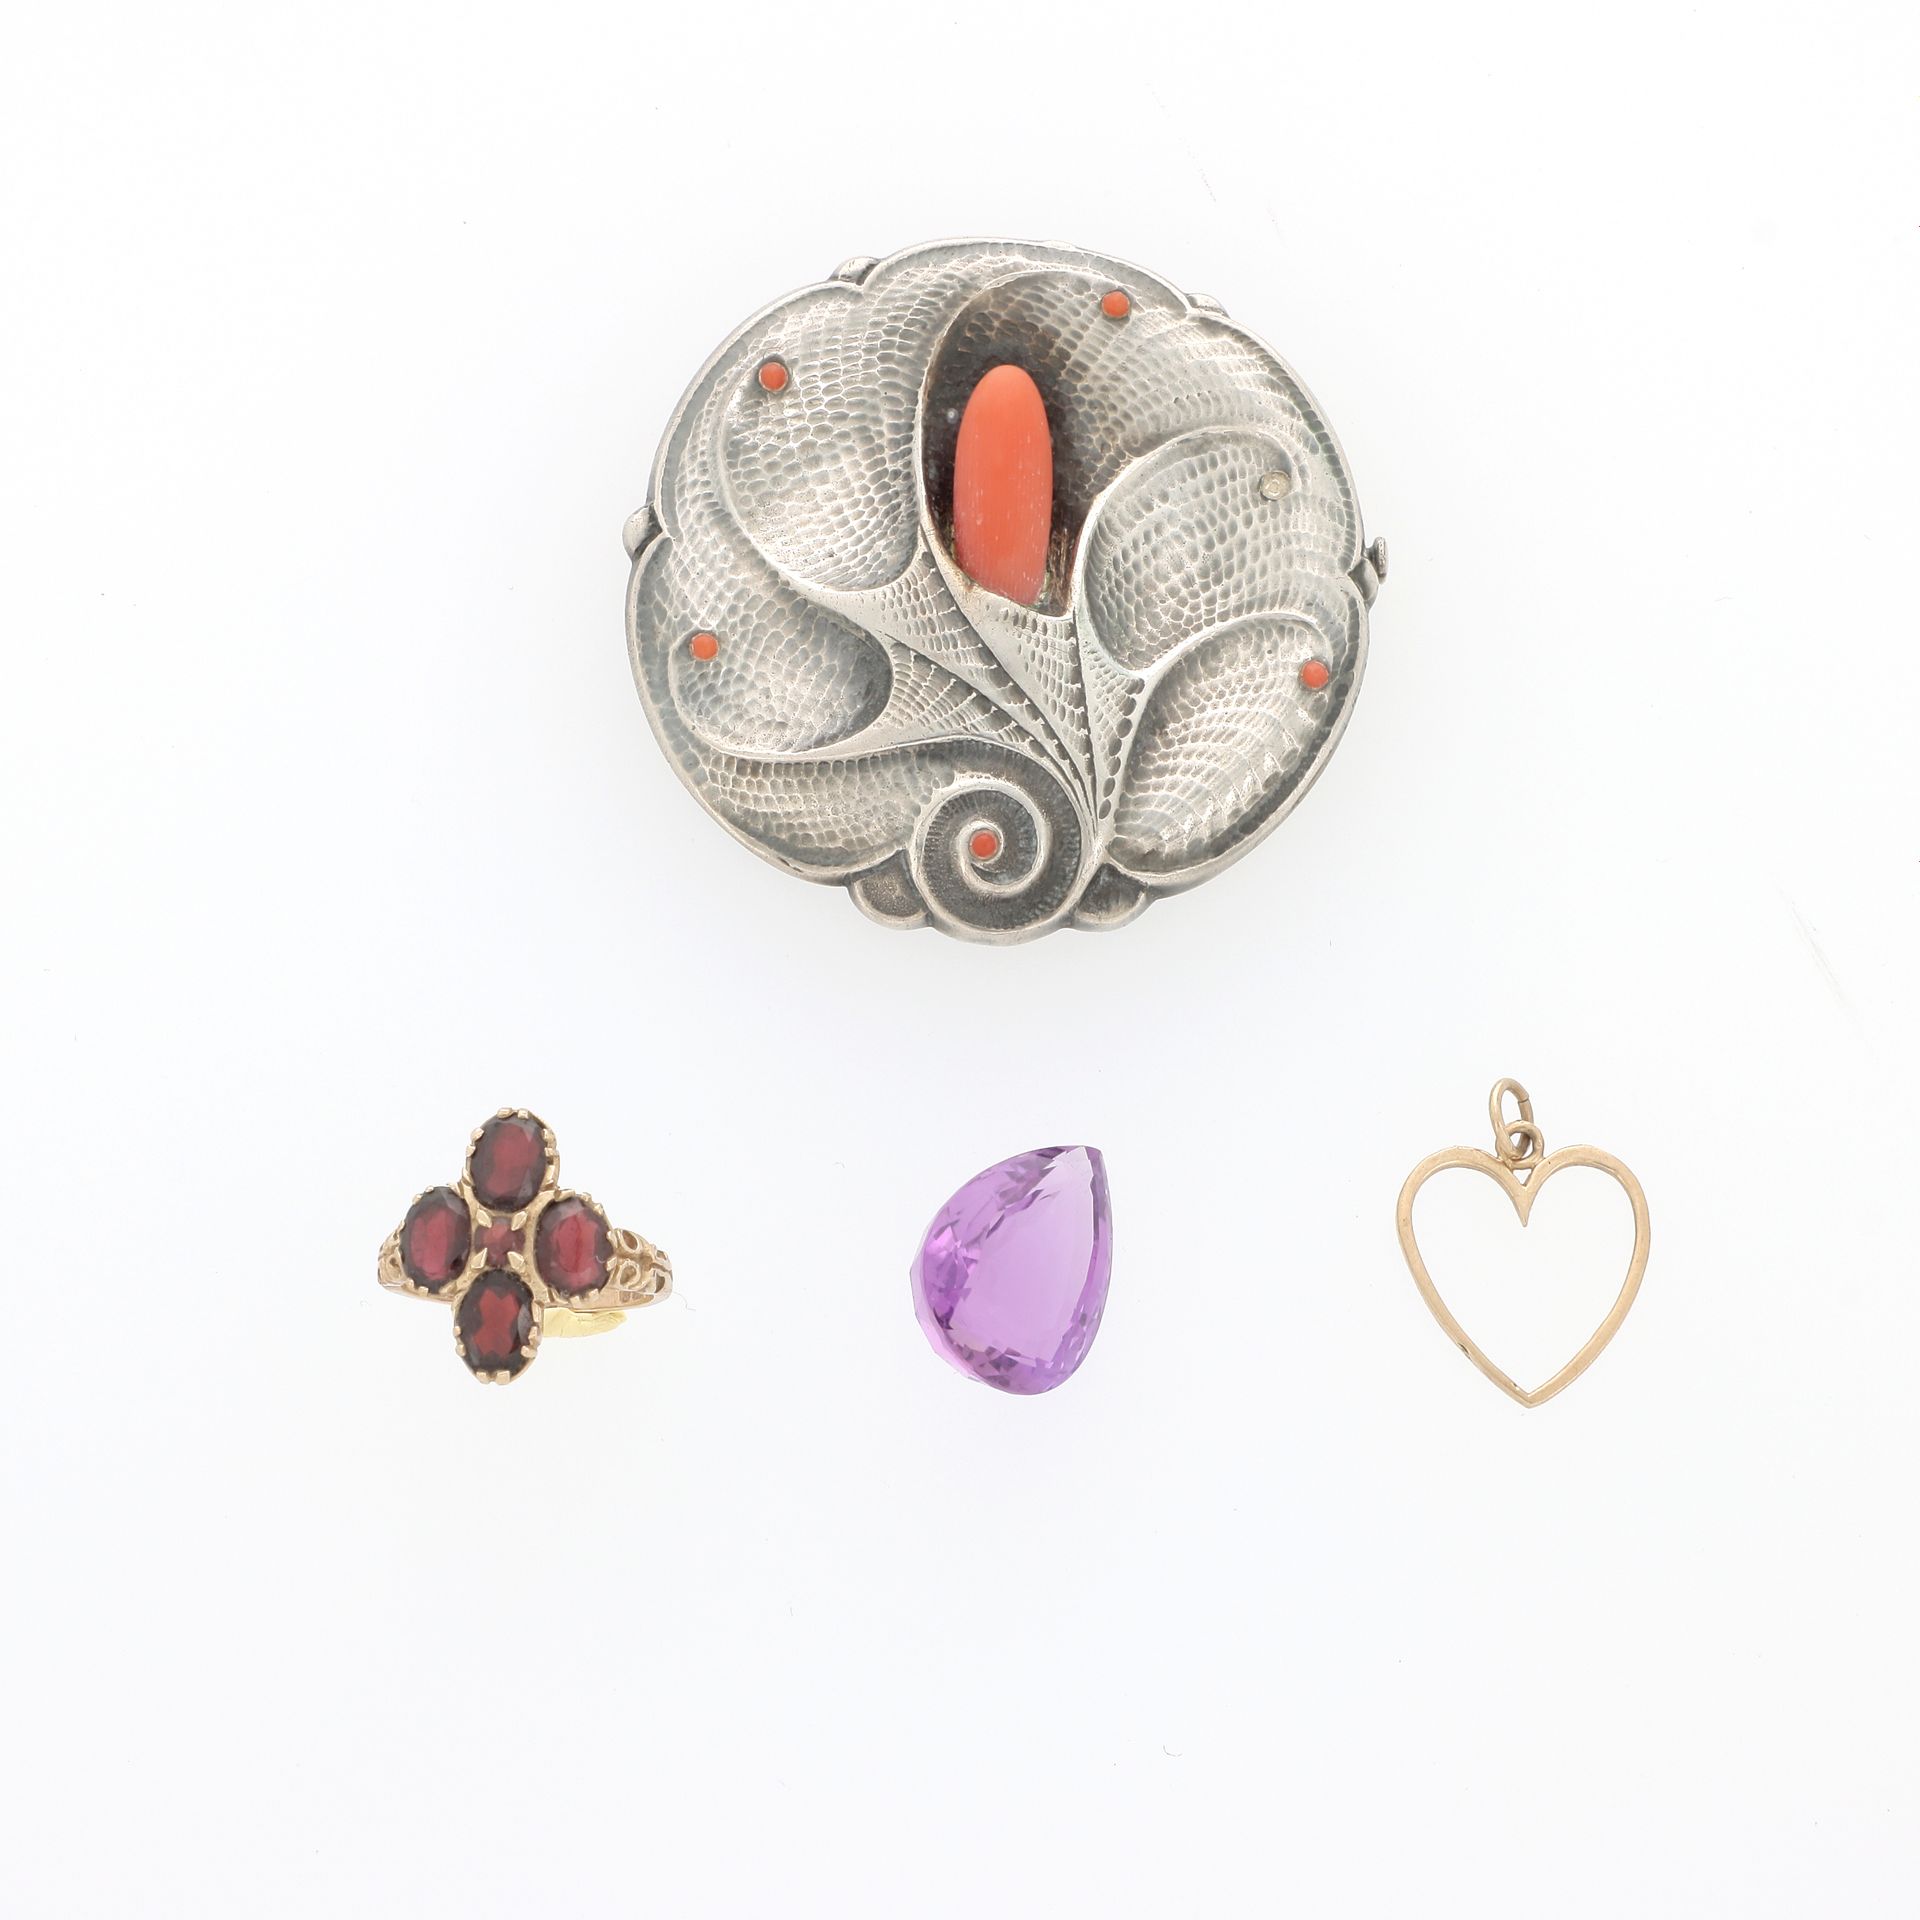 Null 地段包括 :

纸上的梨形紫水晶，一个黄金心形吊坠，一个镶有四颗石榴石的黄金戒指和一个银和珊瑚壳胸针。

黄金物品的重量：4.6克（9k - 375）&hellip;